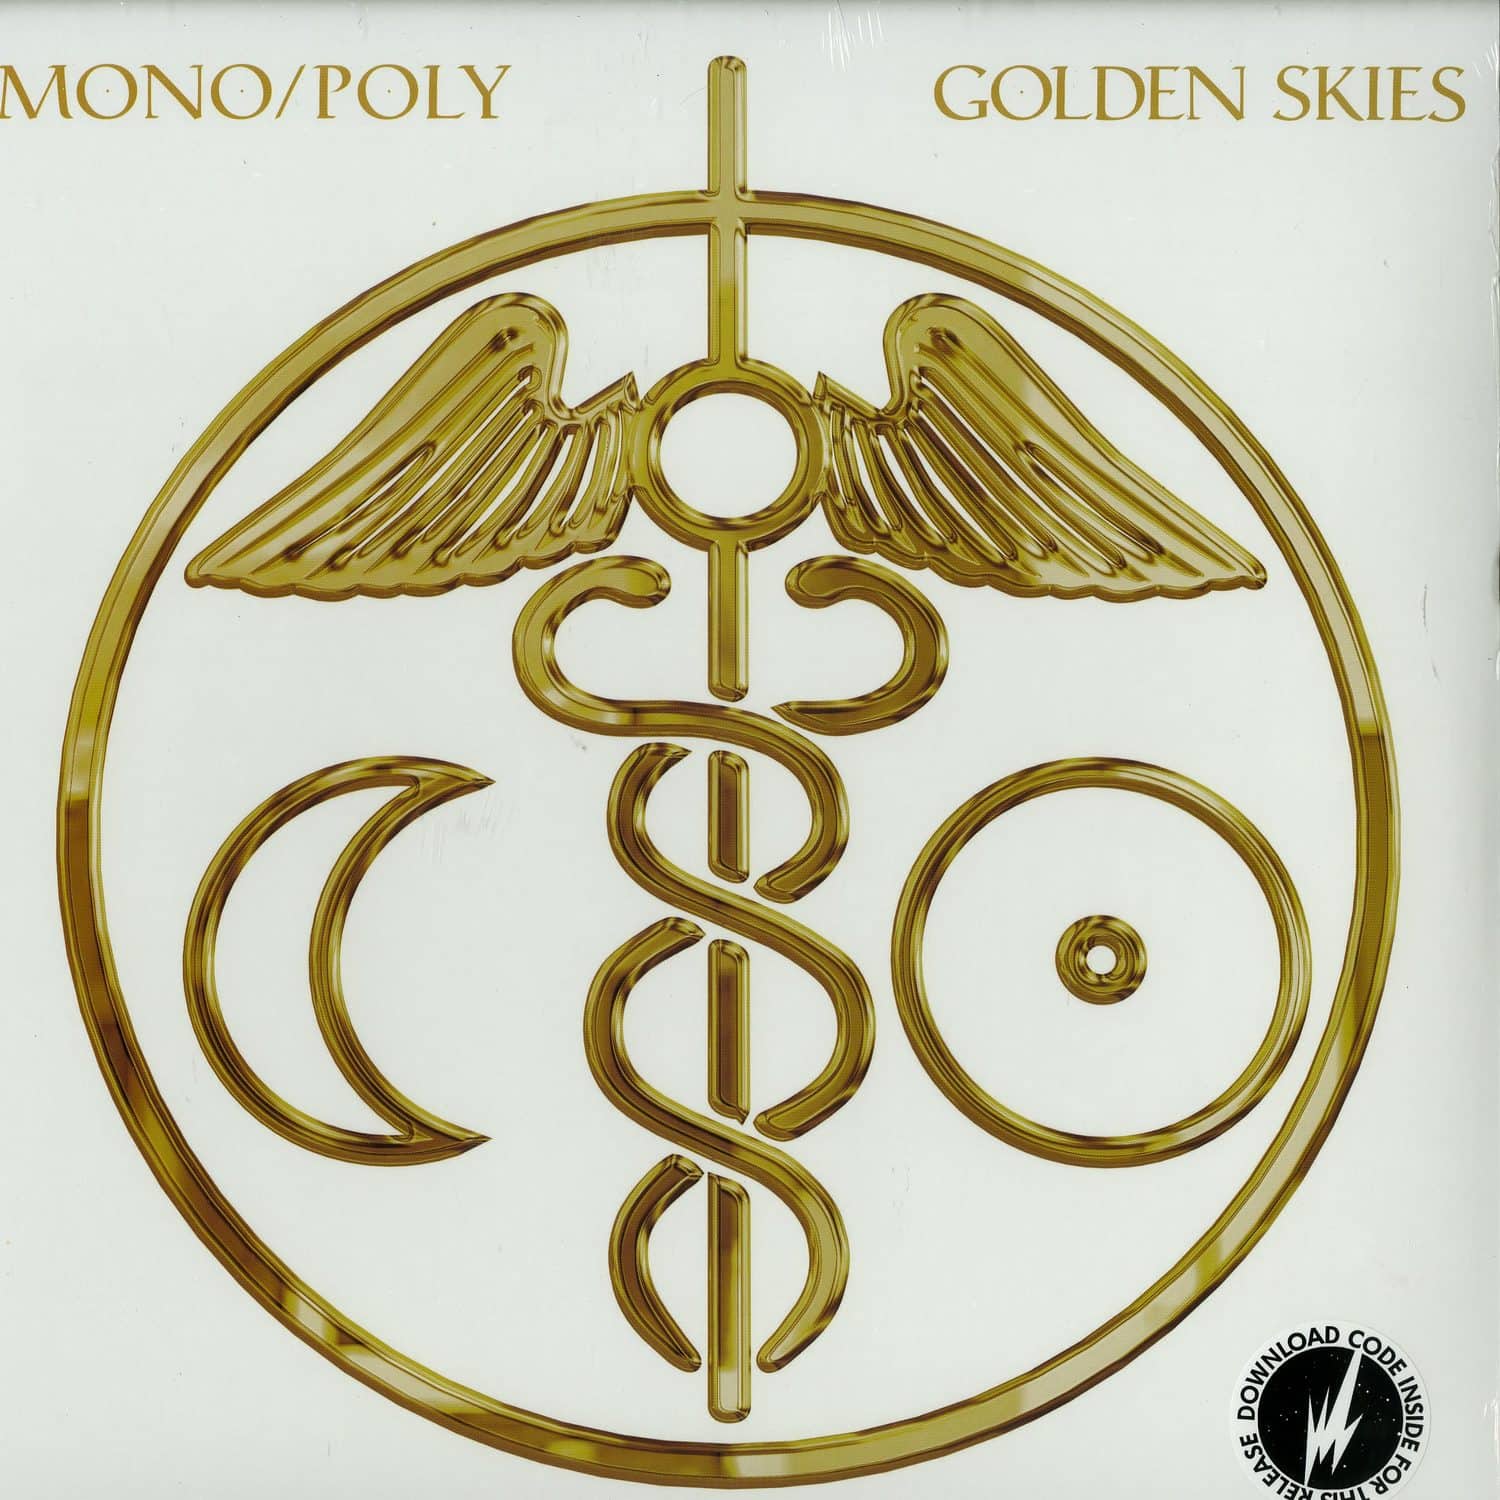 Mono/Poly - GOLDEN SKIES 